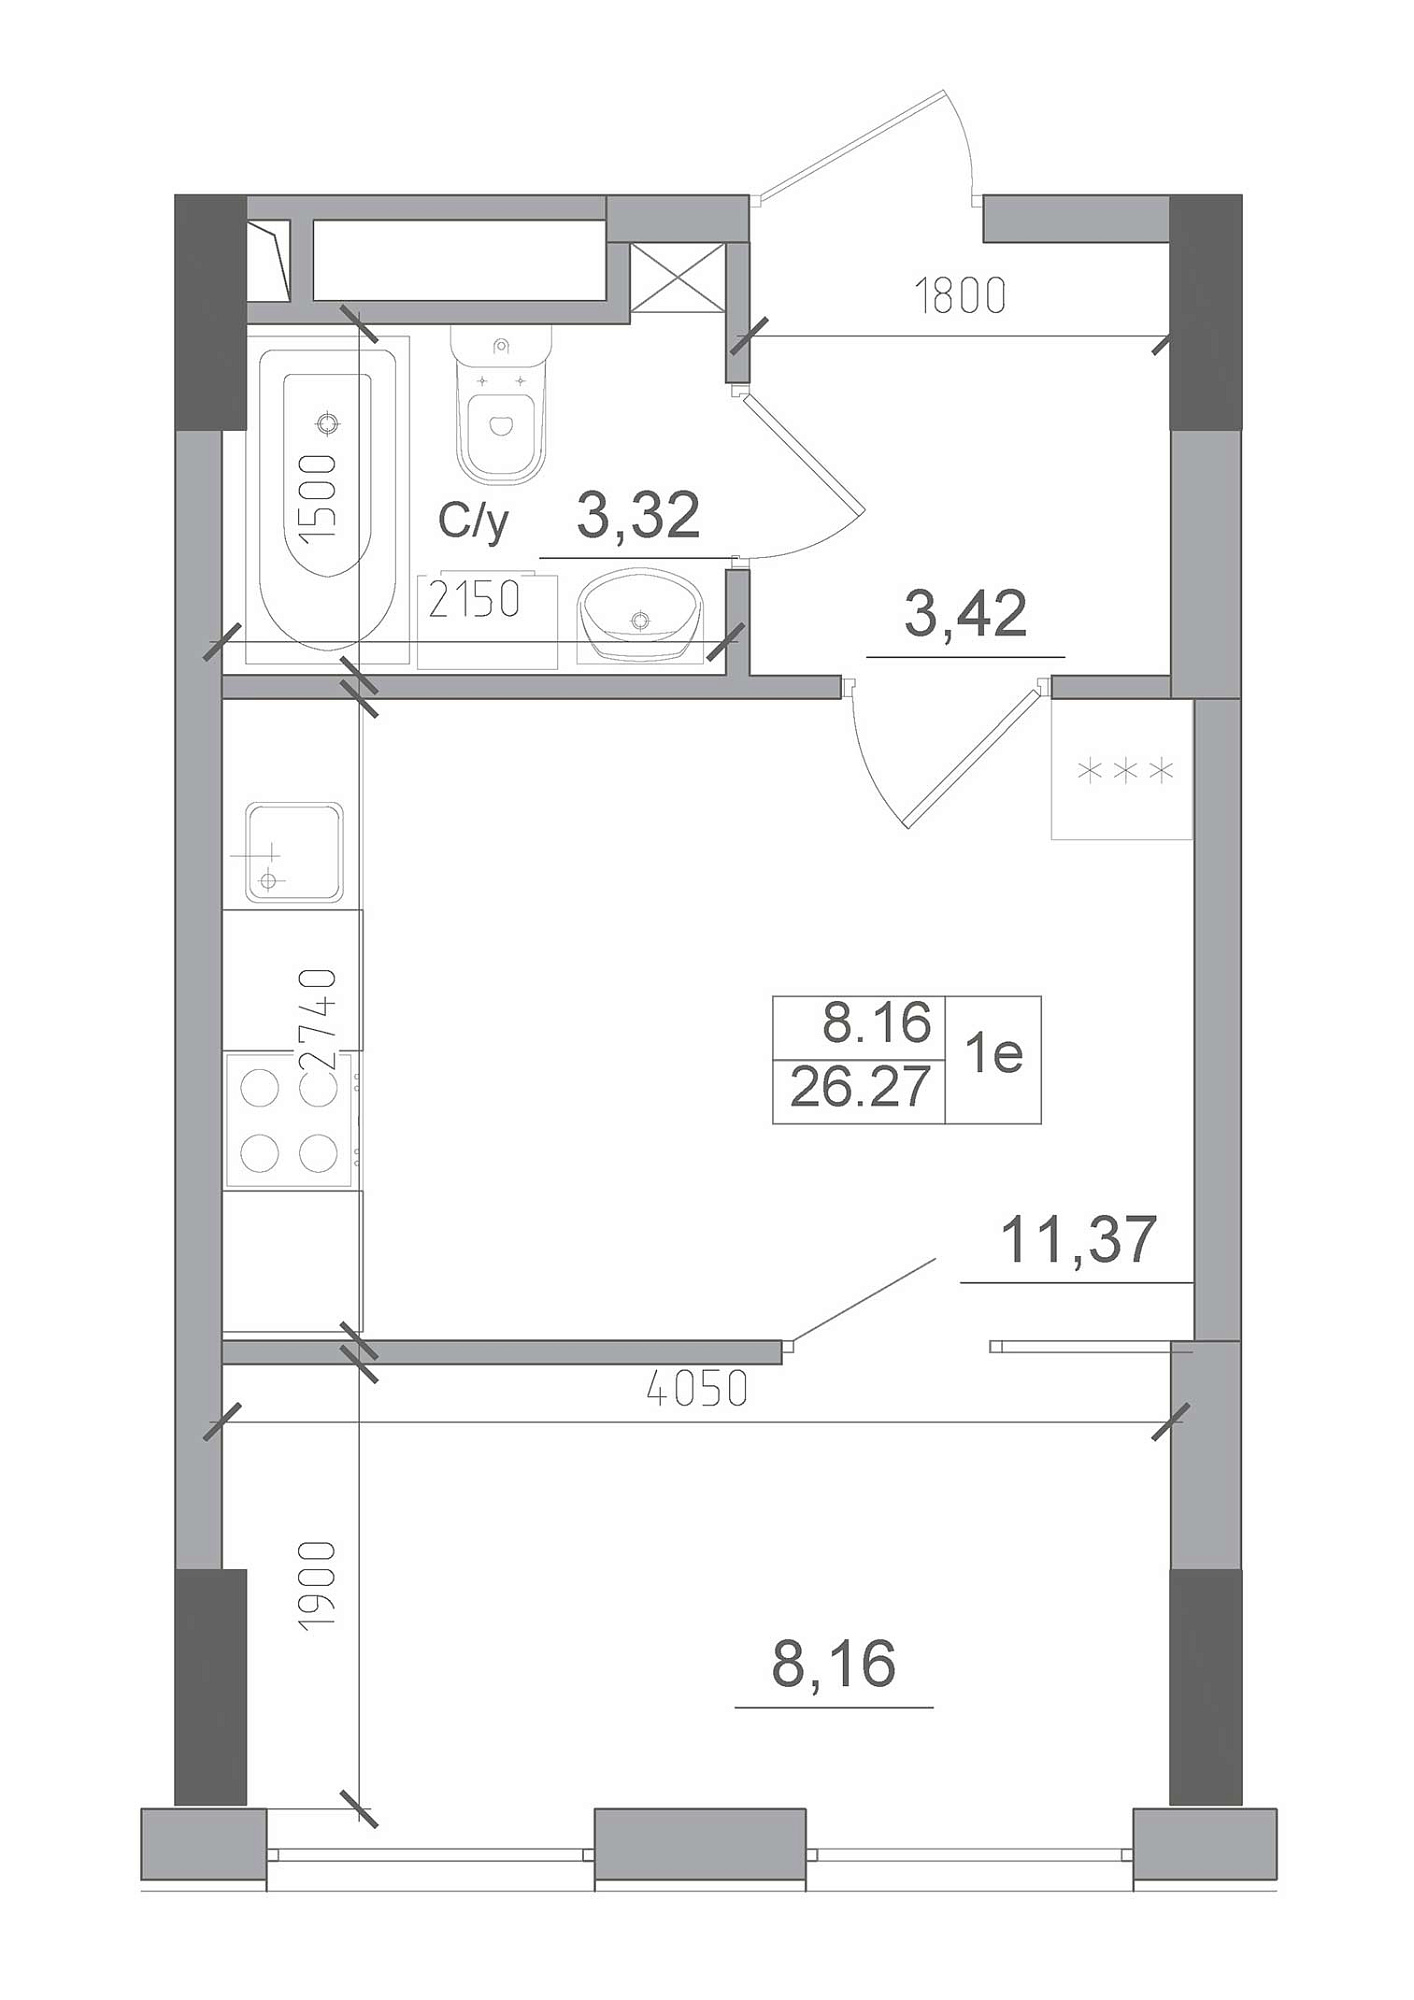 Планировка 1-к квартира площей 26.27м2, AB-22-07/00009.